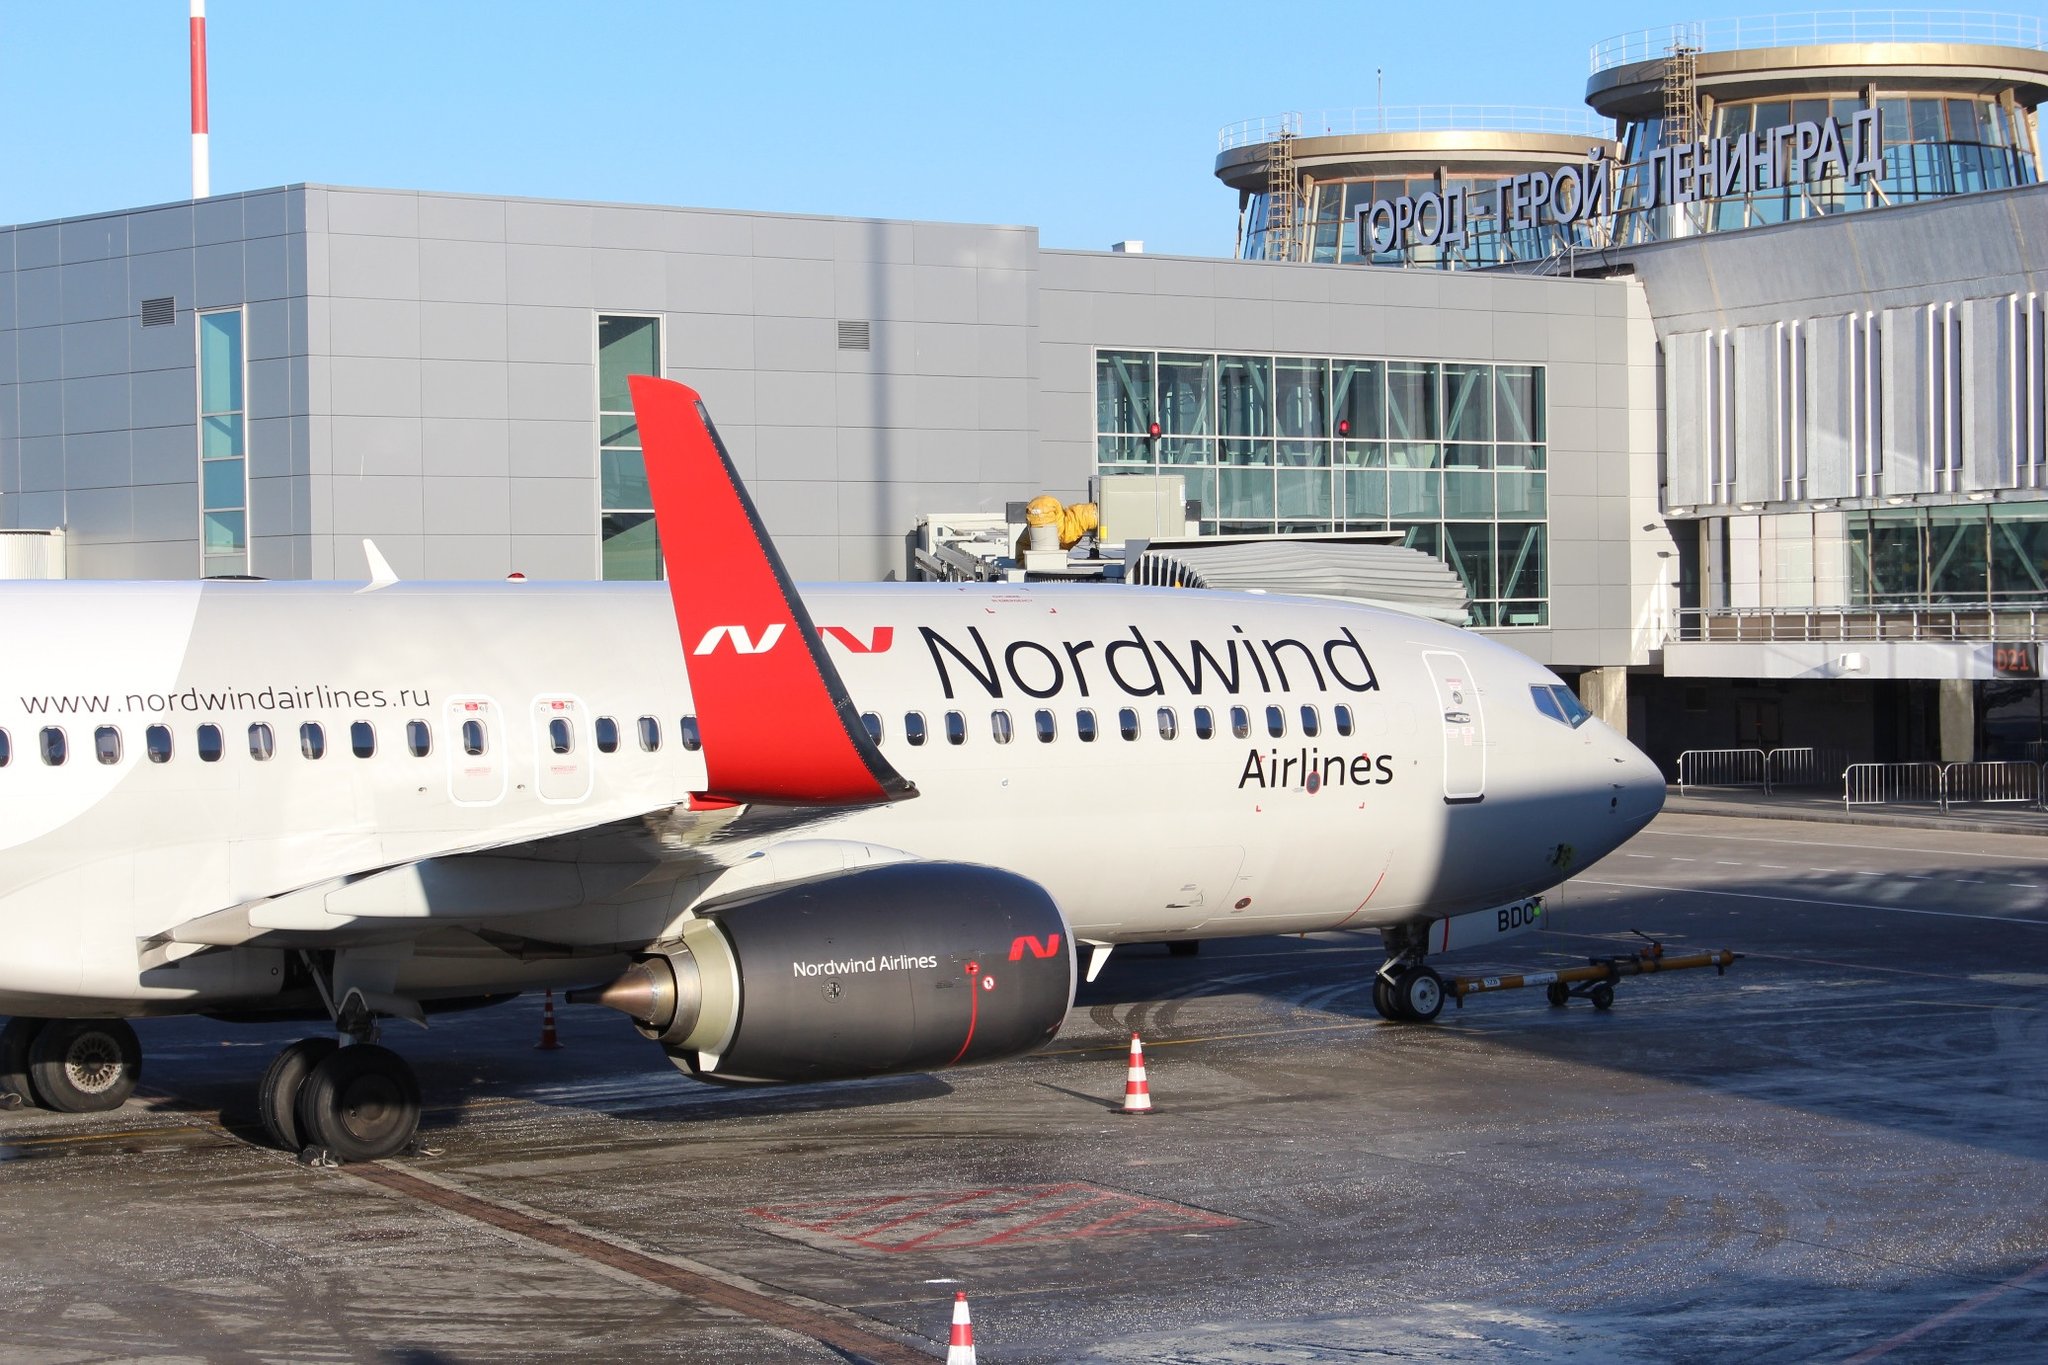 Самолеты авиакомпании северный ветер. Авиакомпания Nordwind Airlines самолеты. Норд Винд авиакомпания самолеты. Северный ветер Северный ветер авиакомпания.